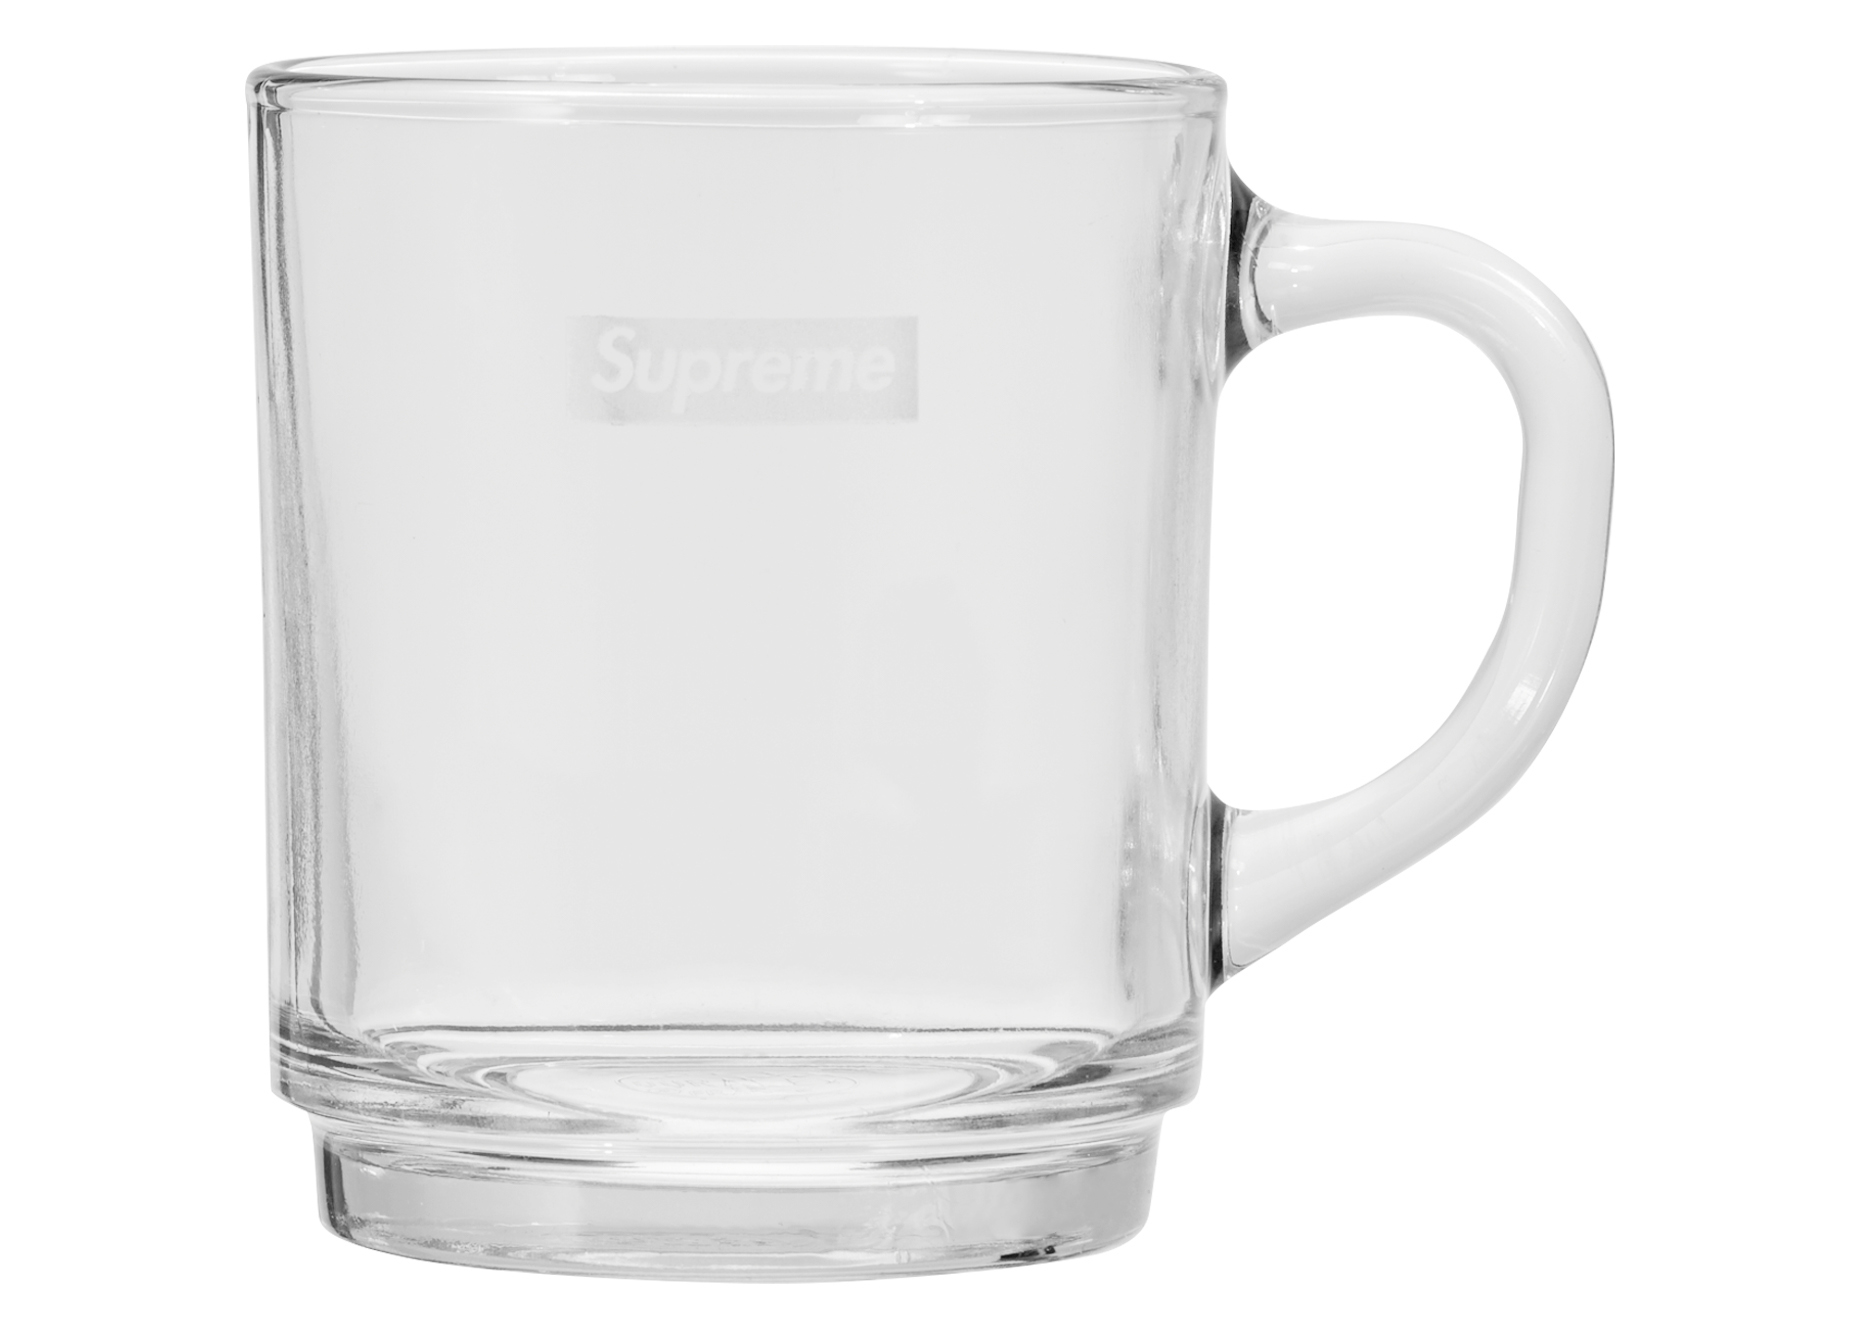 Supreme Duralex Glass Mugs 2×2セットキッチン/食器